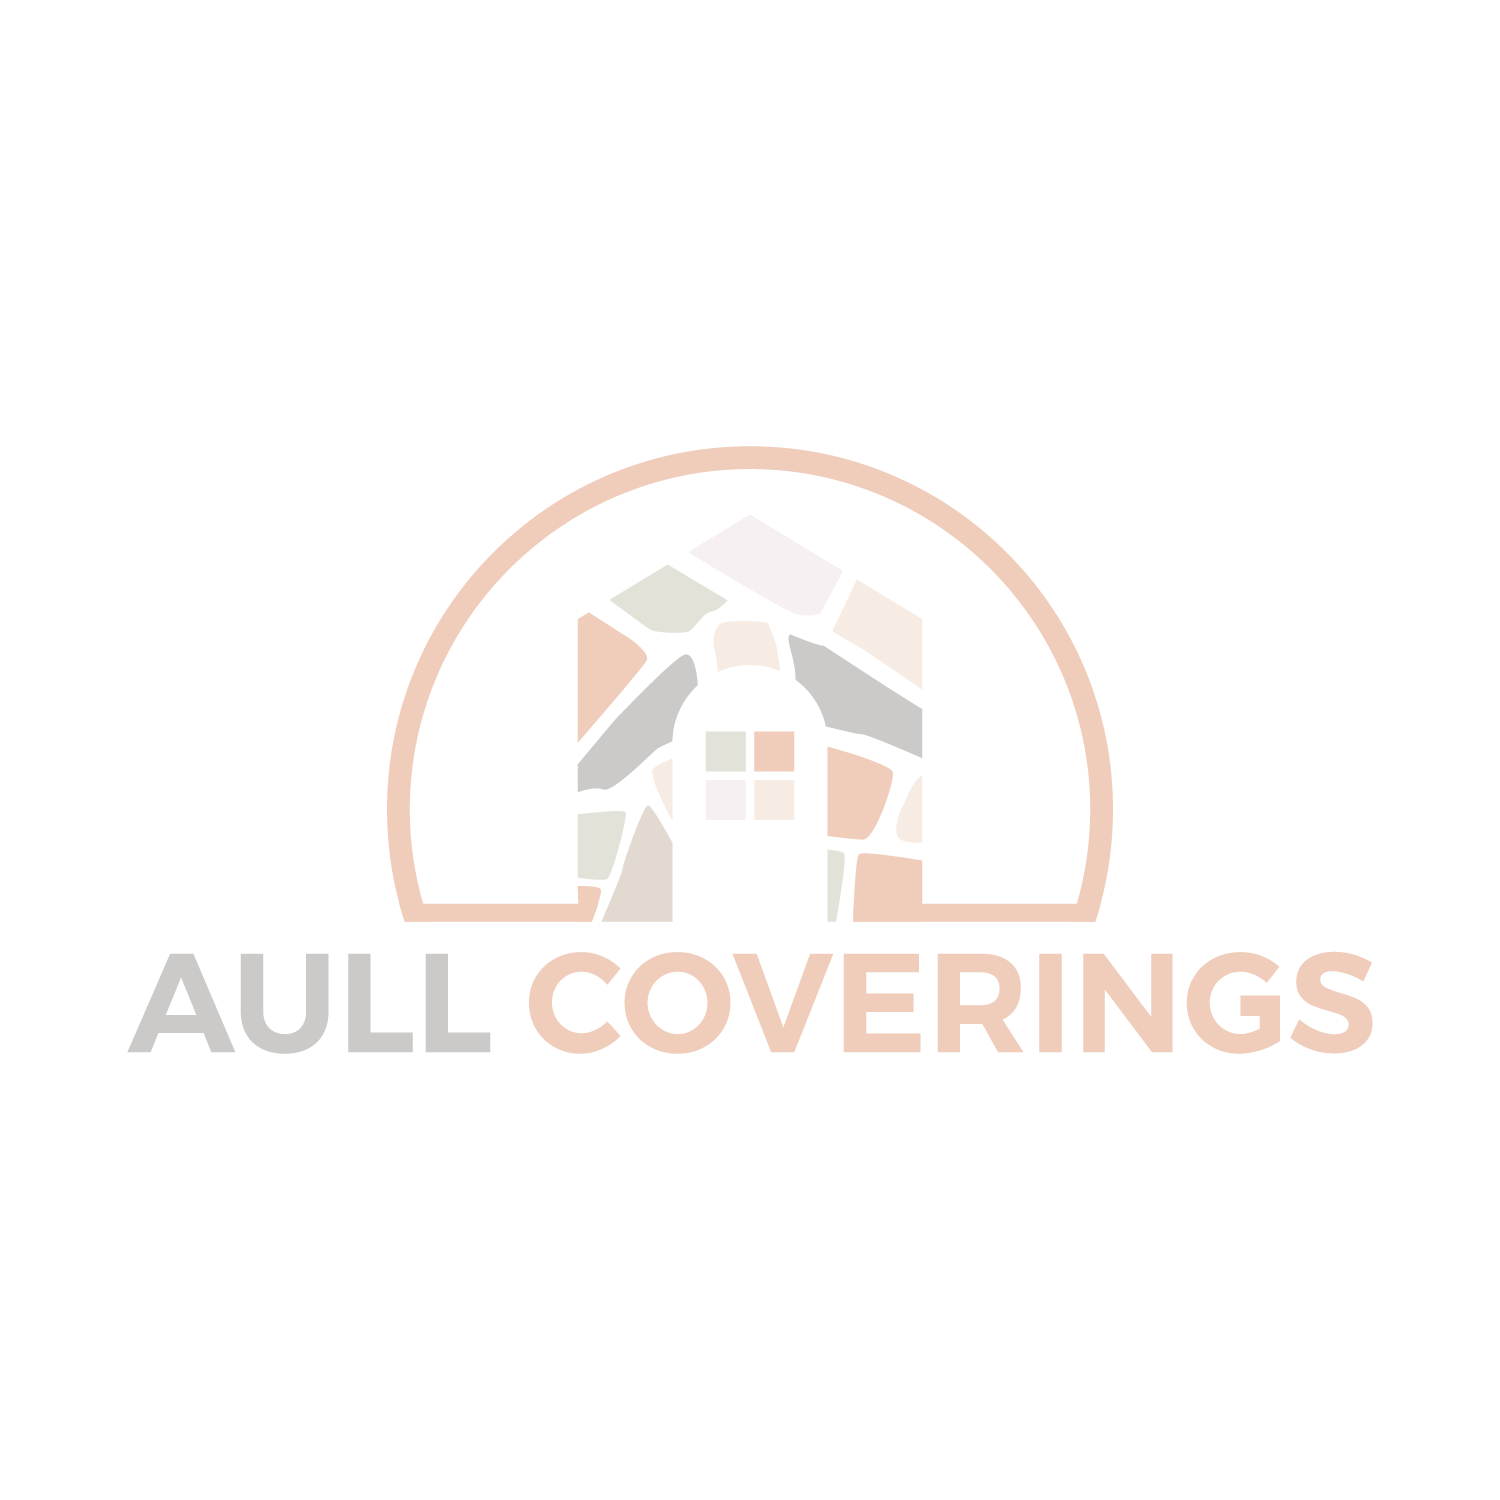 Aull Coverings Logo